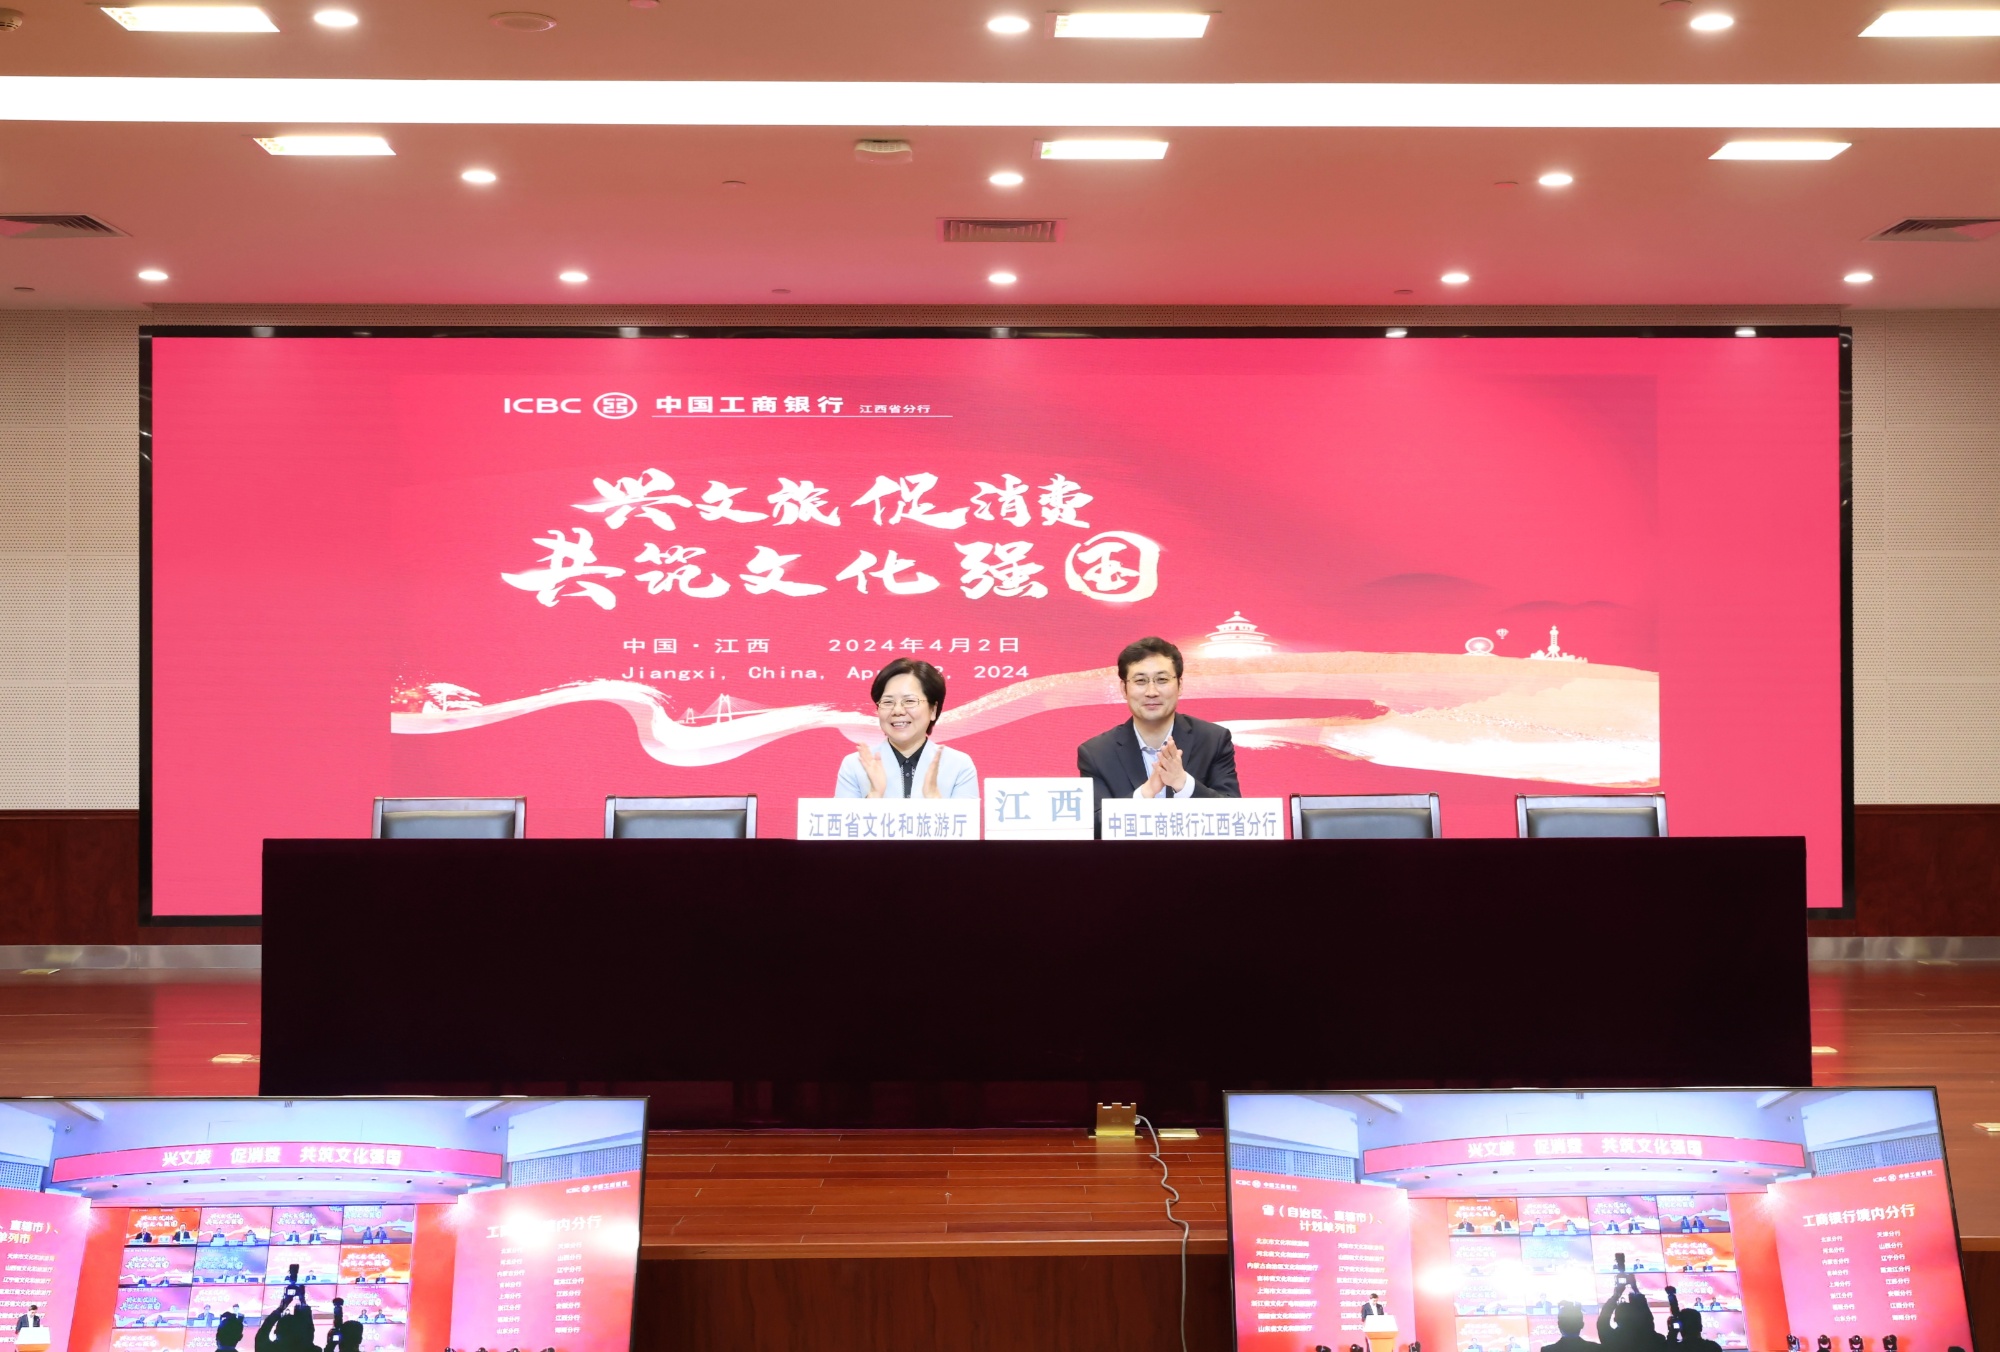  中国工商银行江西省分行与江西省文化和旅游厅签署战略合作协议